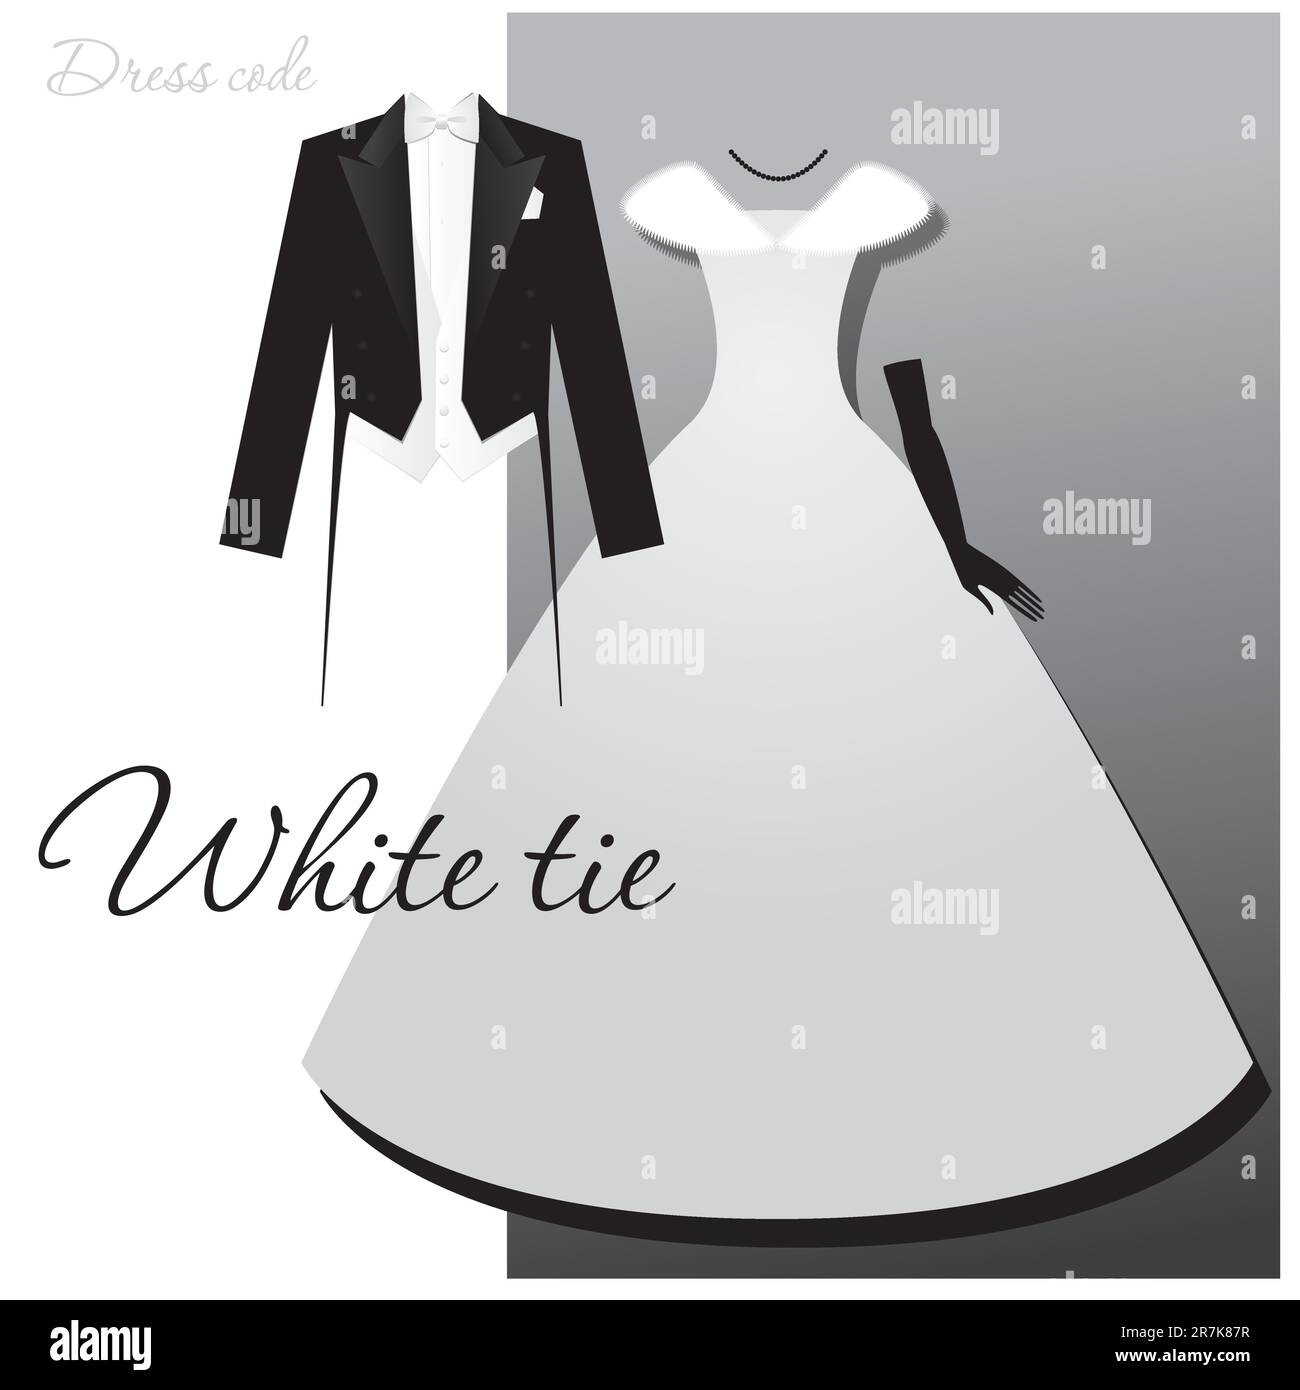 Code vestimentaire : cravate blanche. Homme - queues, gilet léger et noeud blanc, une femme - une robe de bal ou de soirée, de longs gants et une cape à fourrure. Illustration de Vecteur